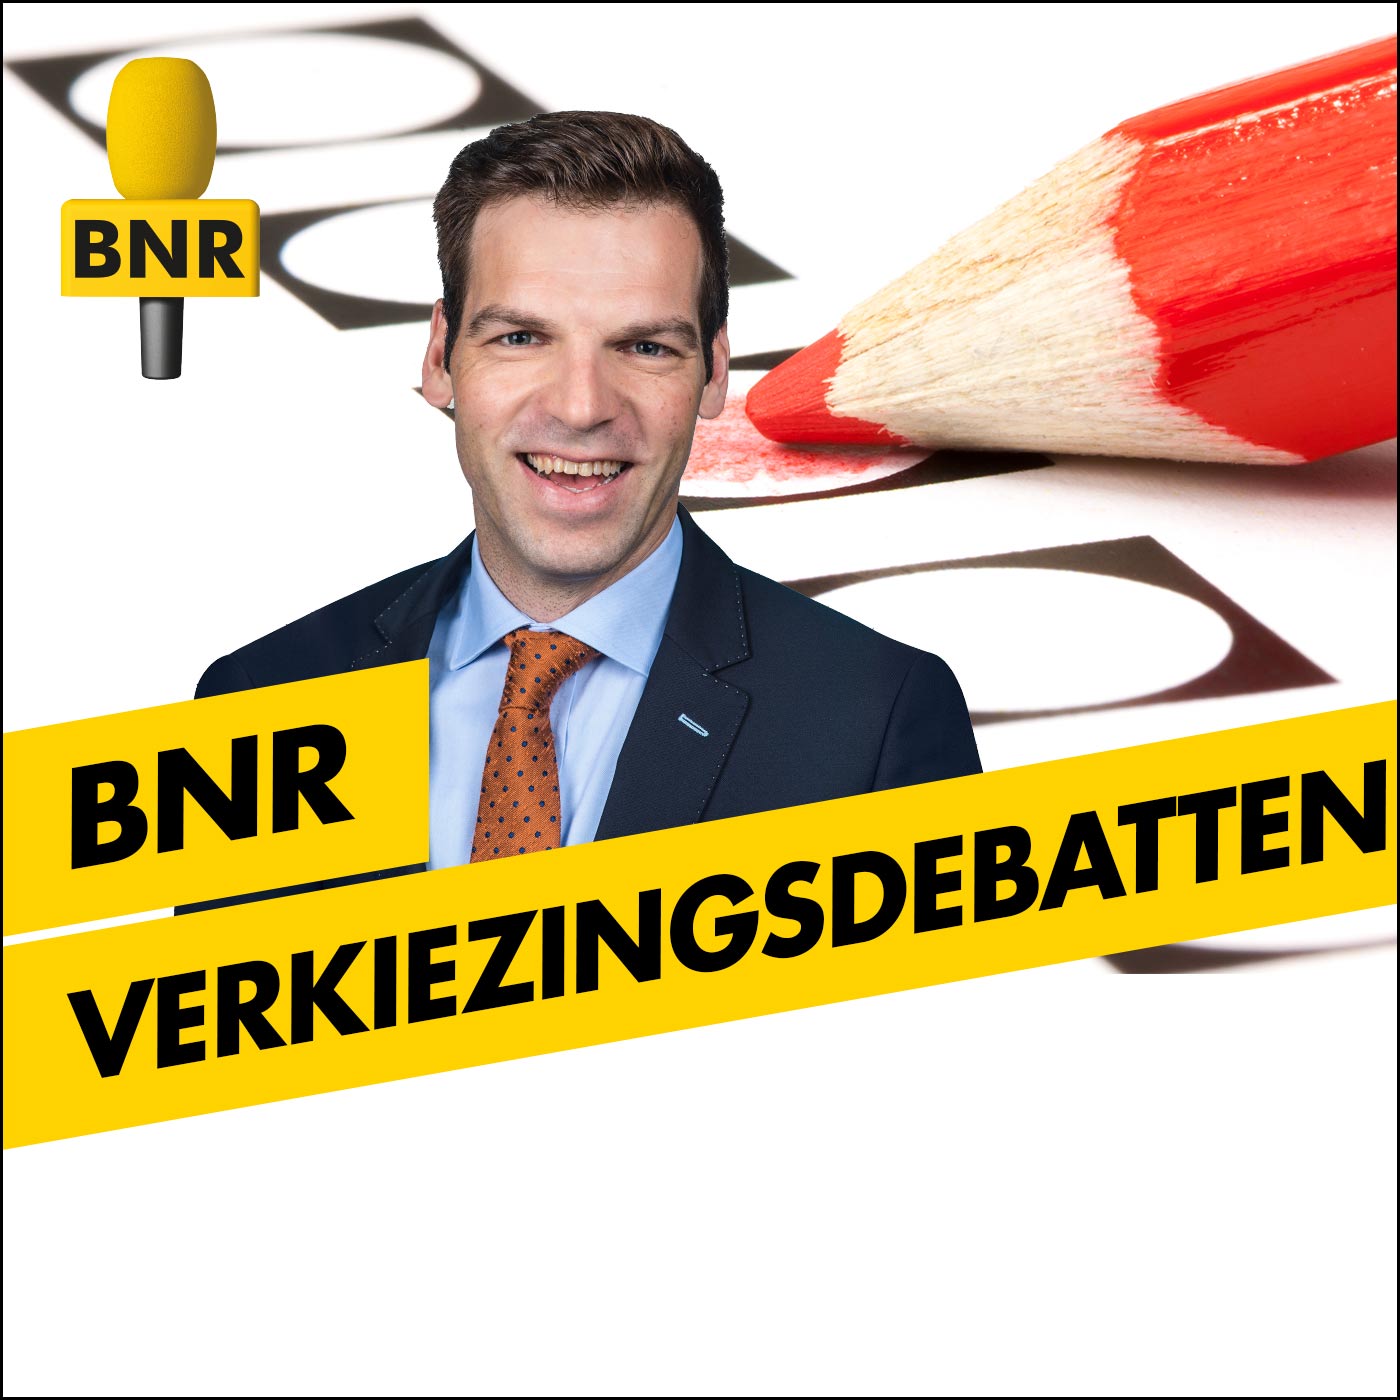 BNR Verkiezingsdebatten